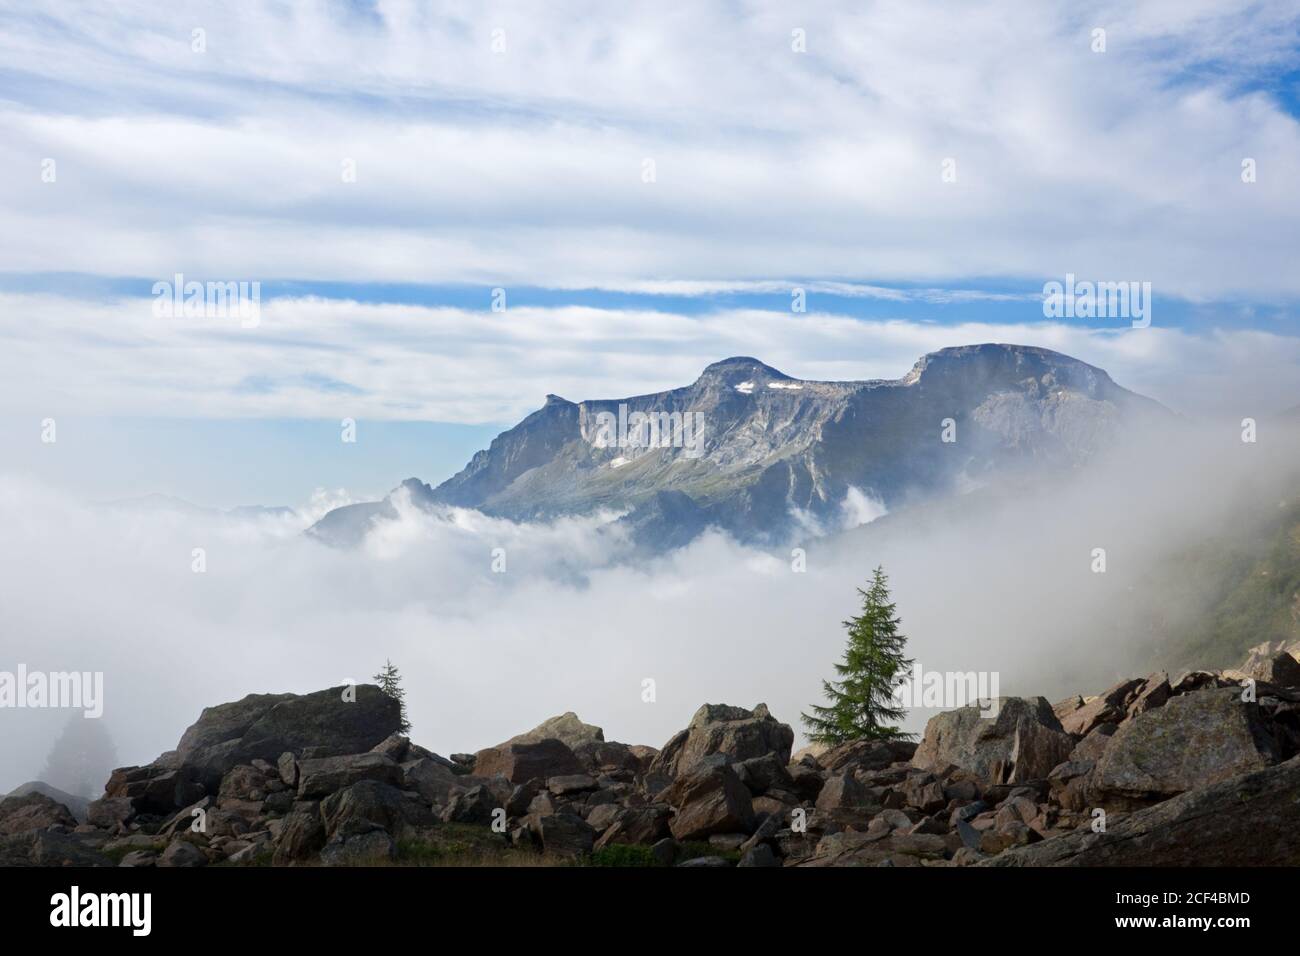 Paysage de montagne à l'aube avec des pins isolés qui poussent entre des rochers gigantesques, brume dans la vallée Banque D'Images